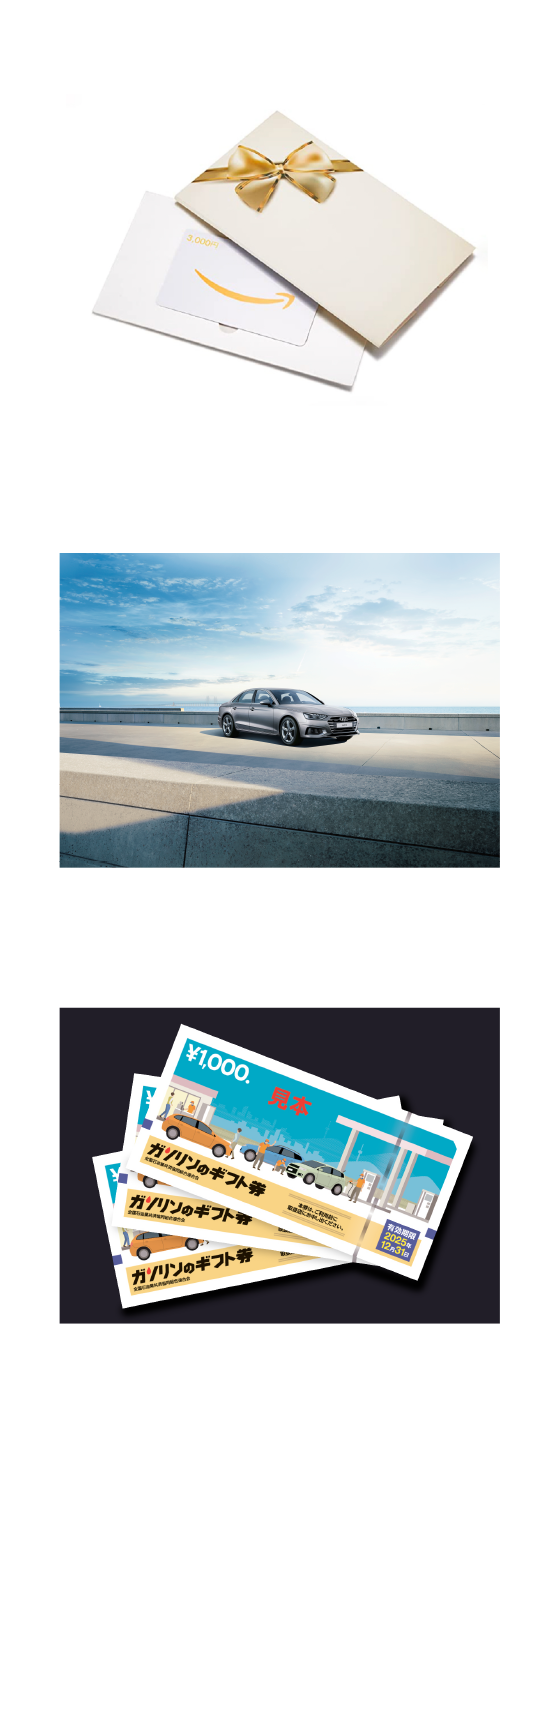 A賞 Amazonギフト券 B賞 JTB旅行券 C賞 ガソリンのギフト券